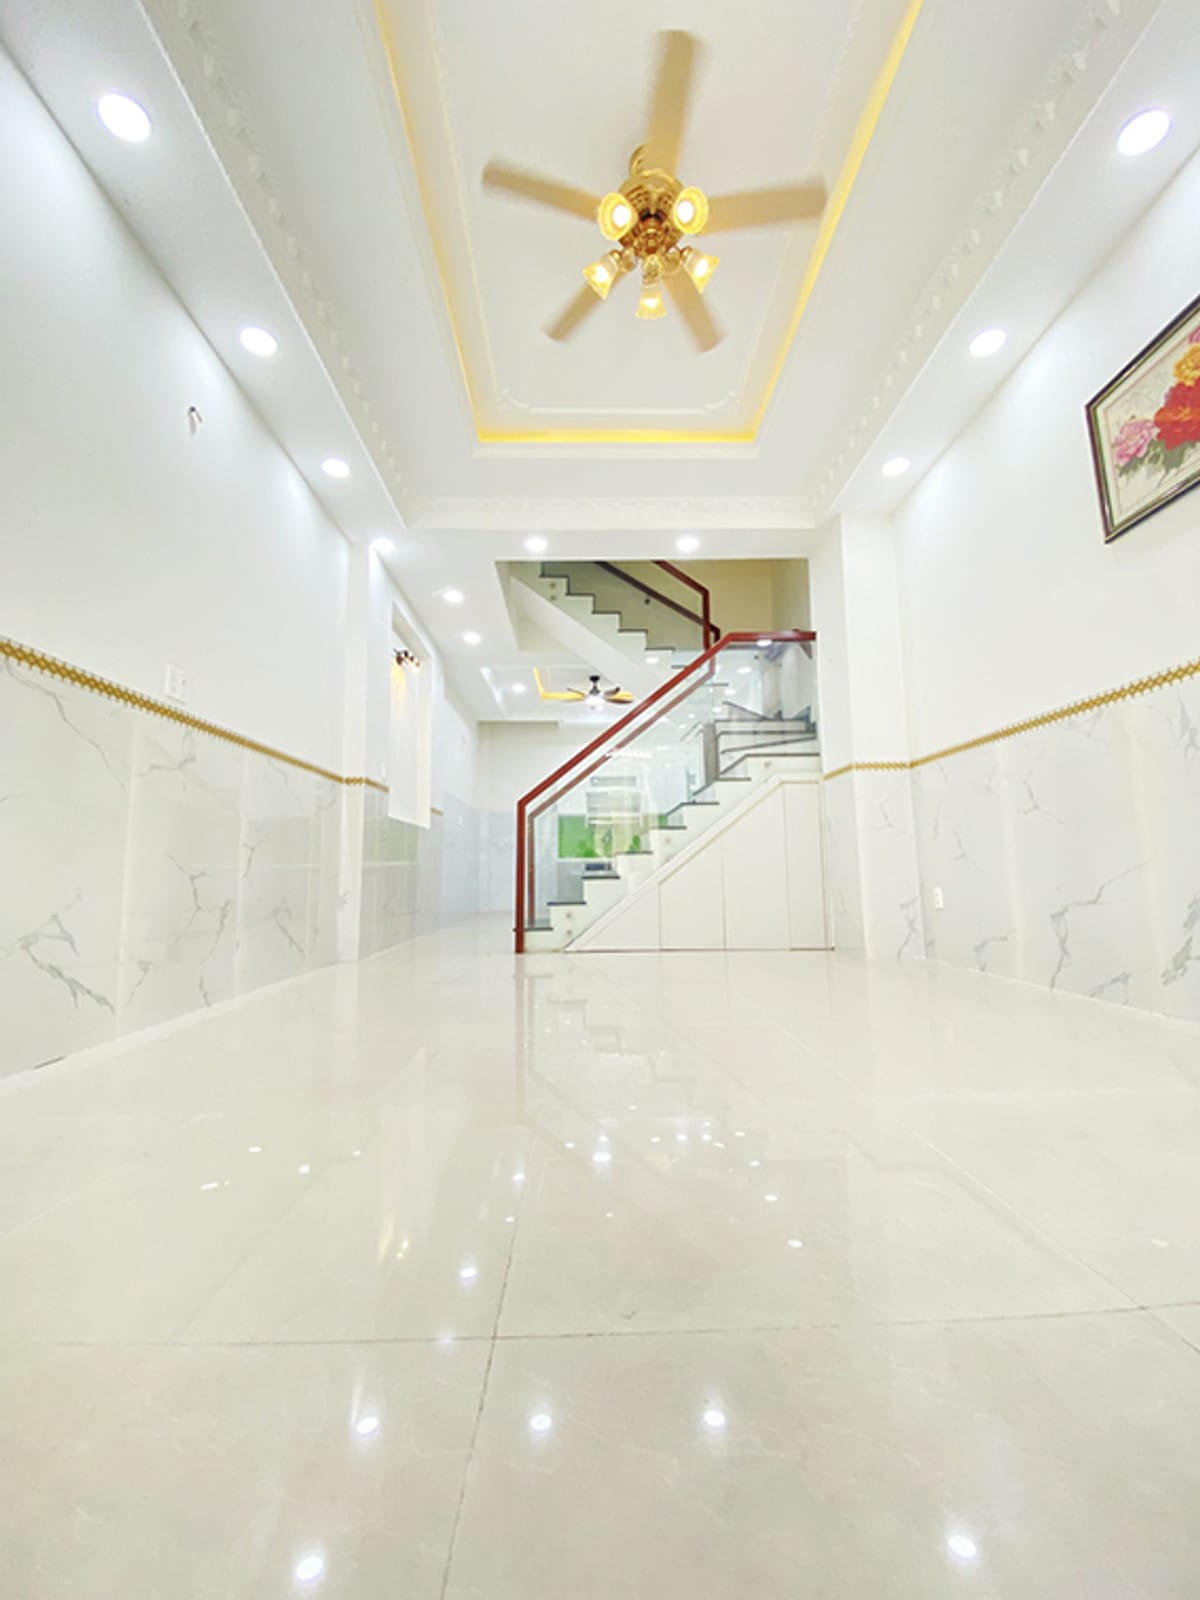 Bán nhà tốt đẹp hẻm xe hơi Phạm Văn Hai, Tân Bình, 4 tầng, 52m2